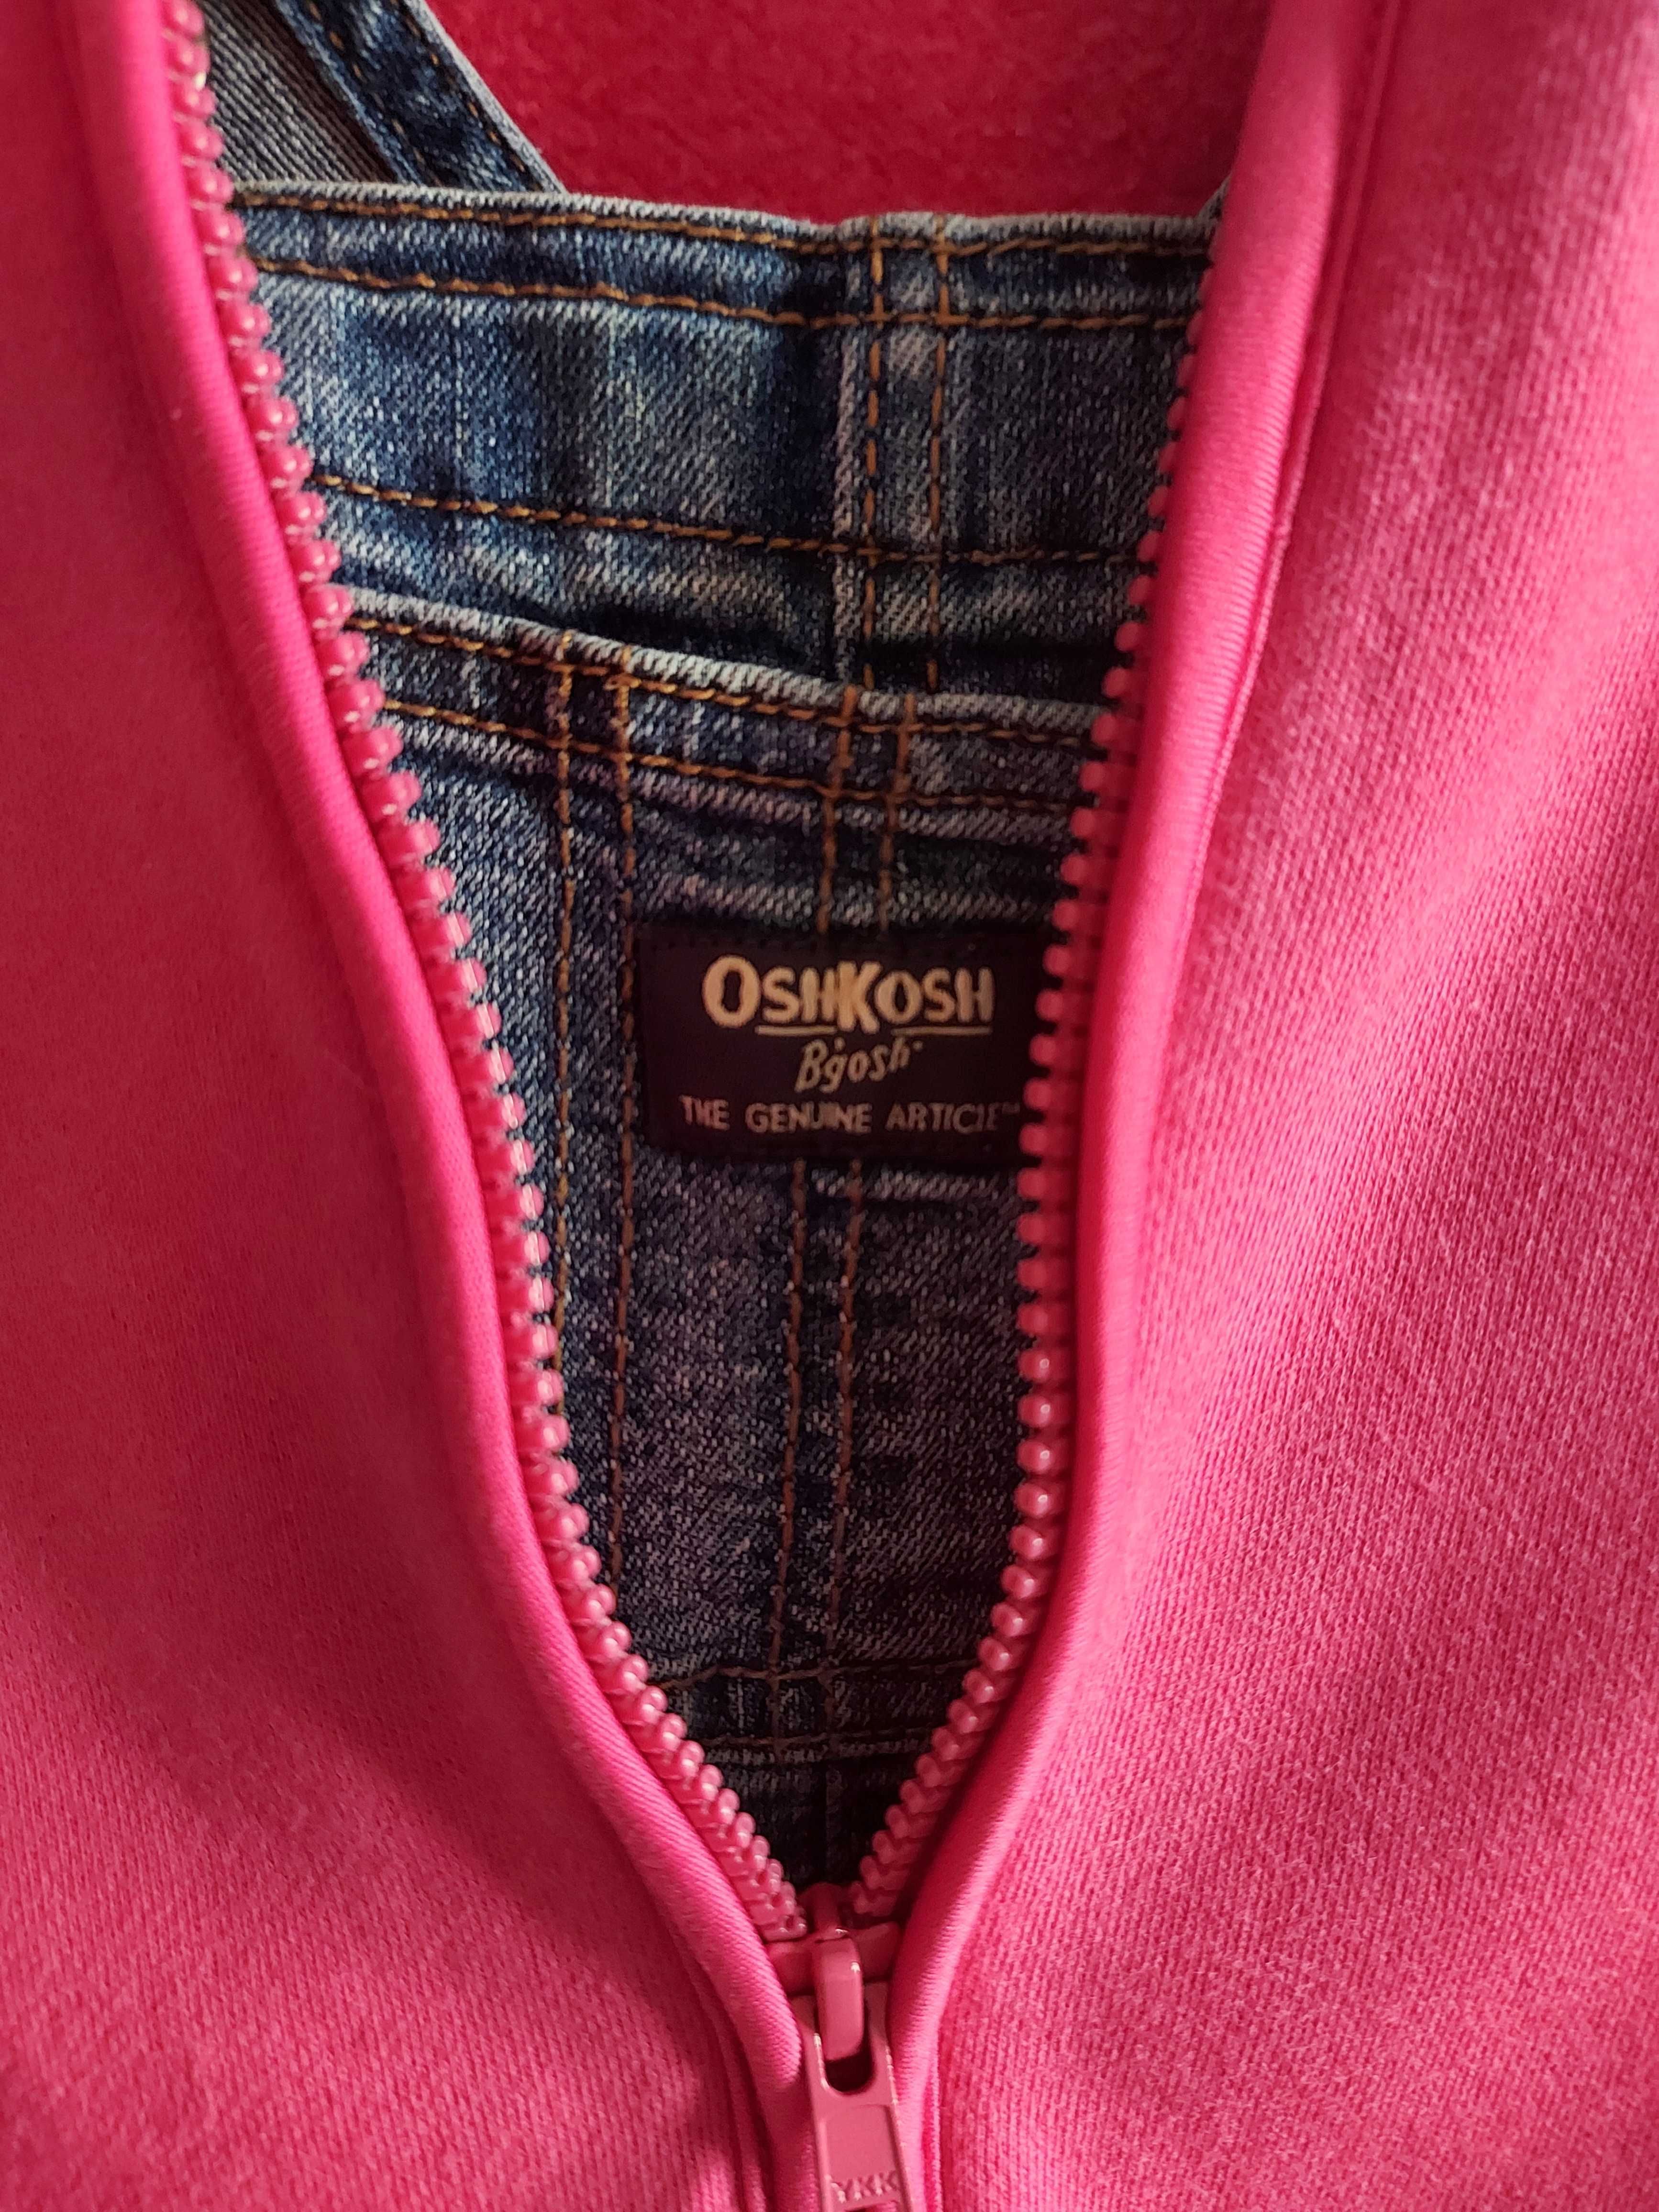 Spodnie ogrodniczki Oshkosh + bluza Gymboree r. 86 (18-24 mce)